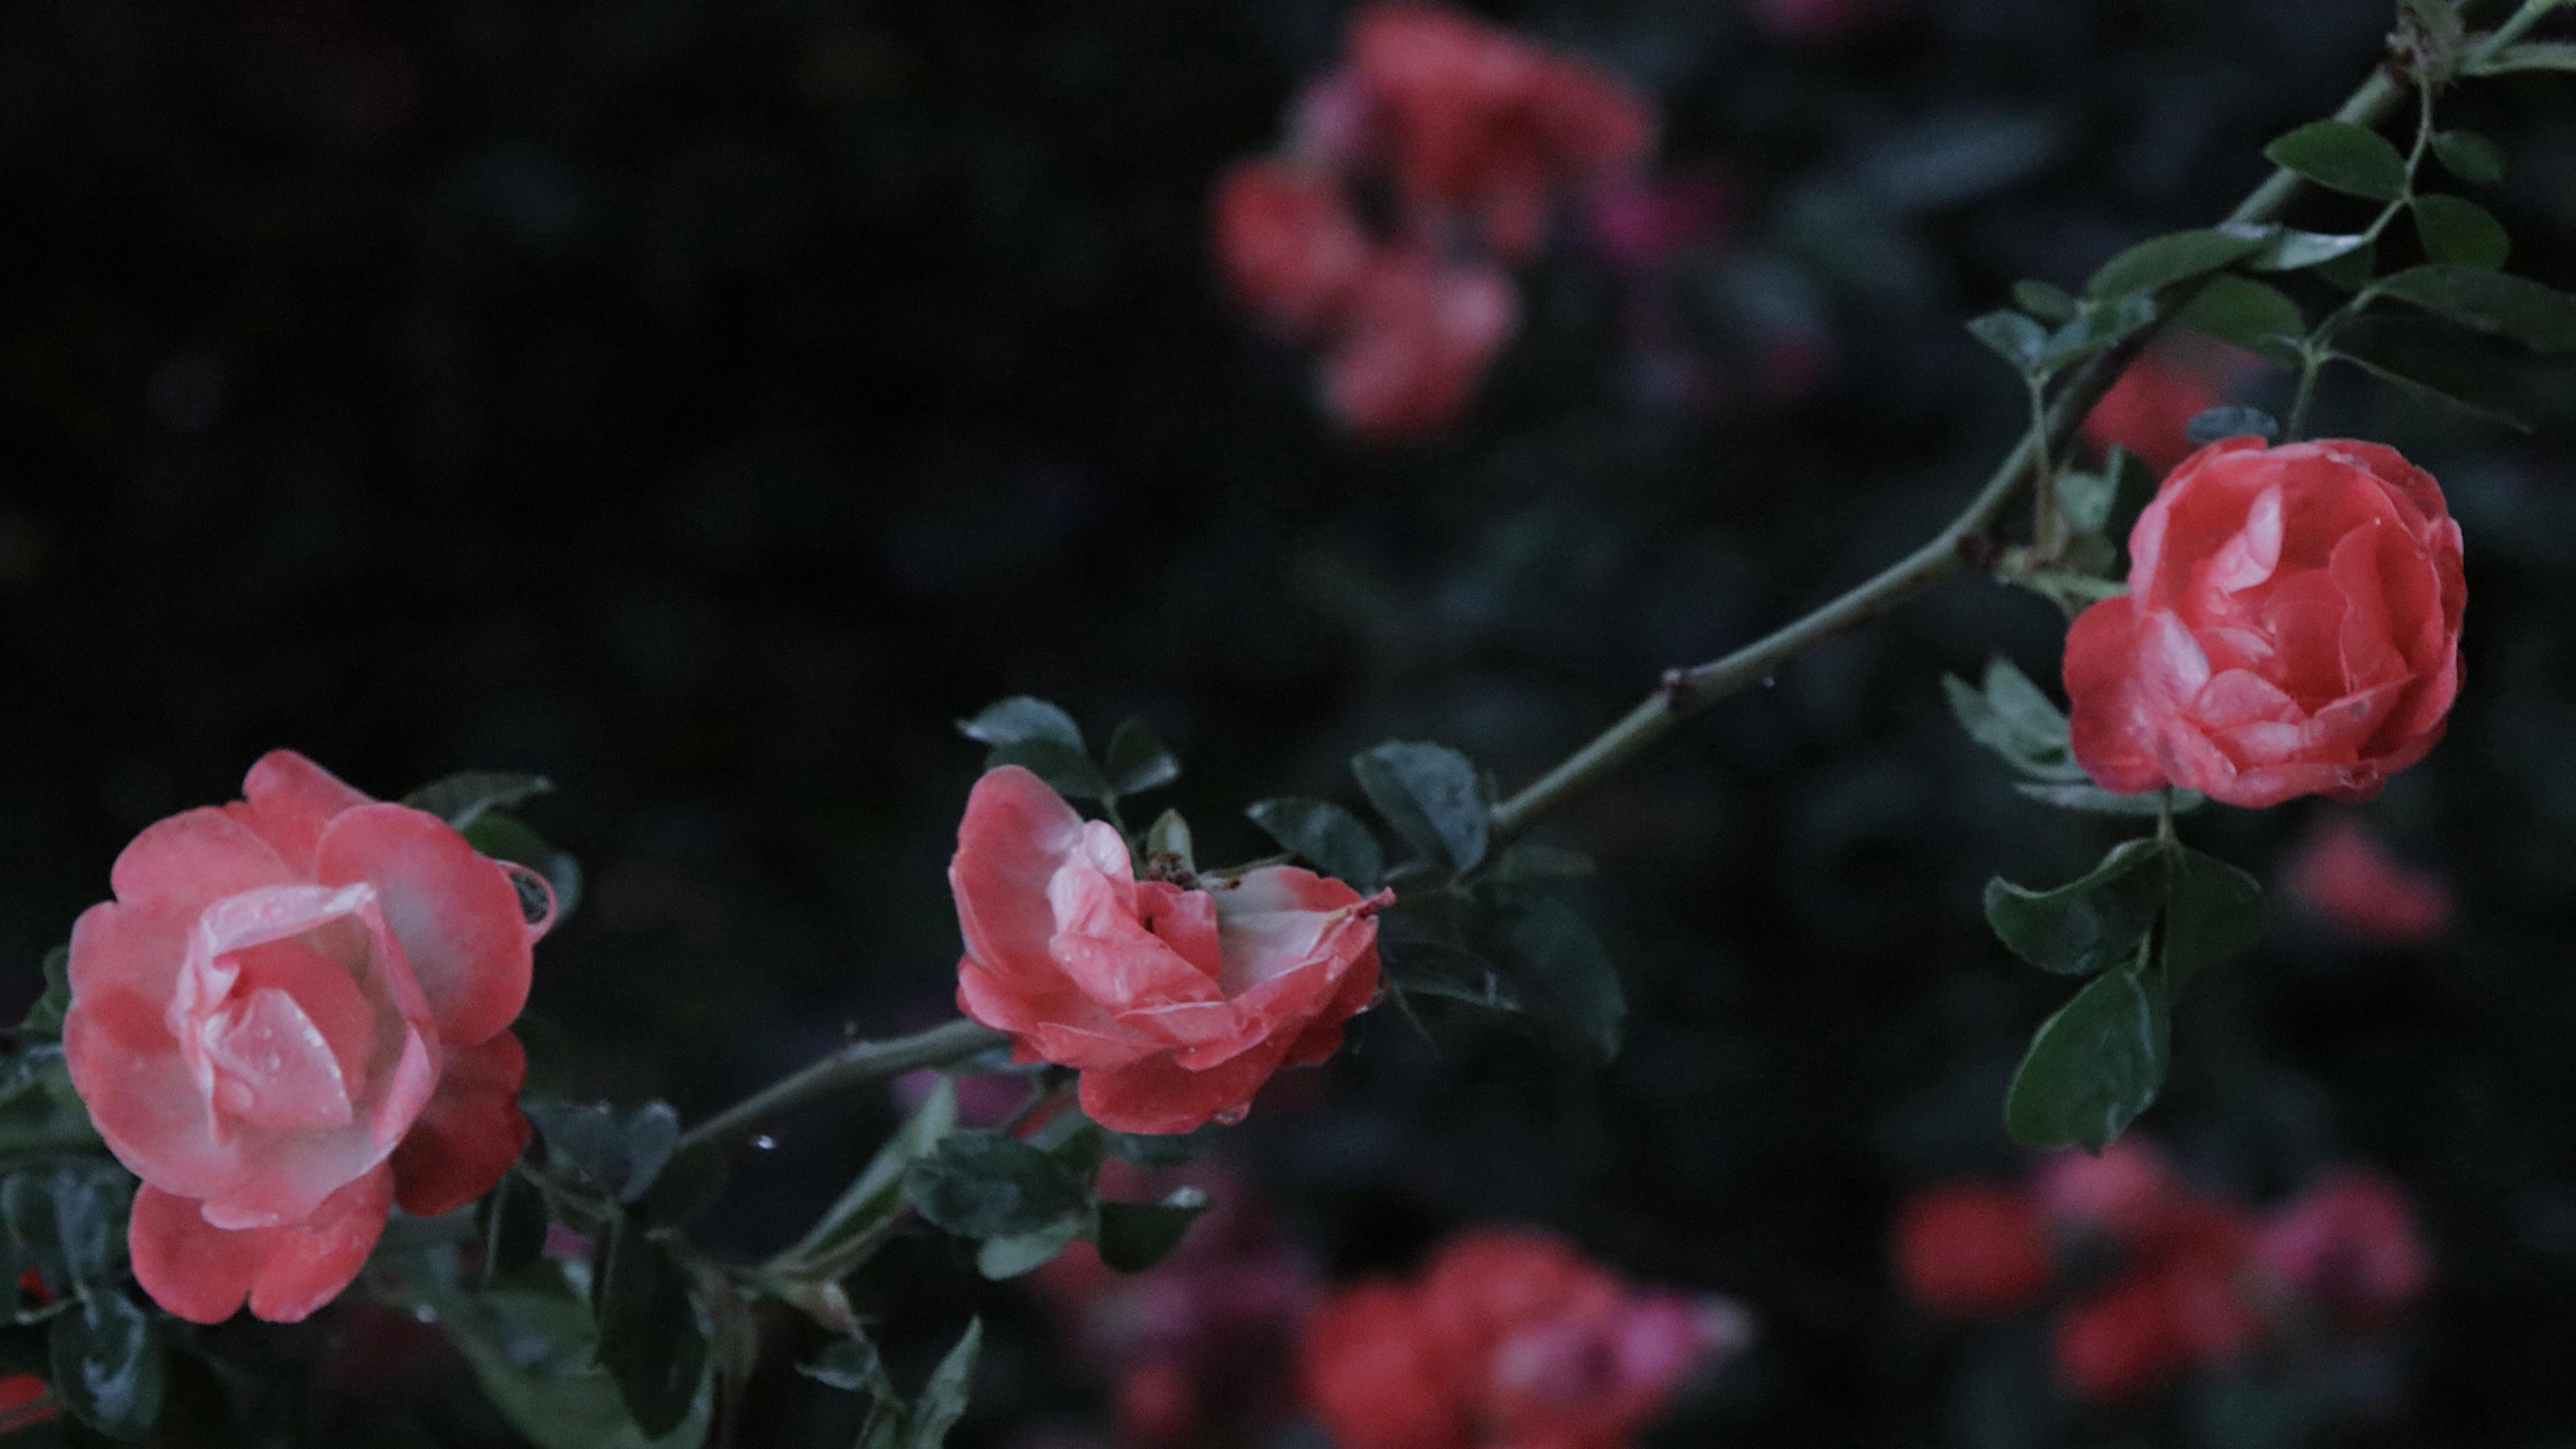 盛开的蔷薇花图片桌面壁纸 蔷薇花壁纸高清精选 三千图片网